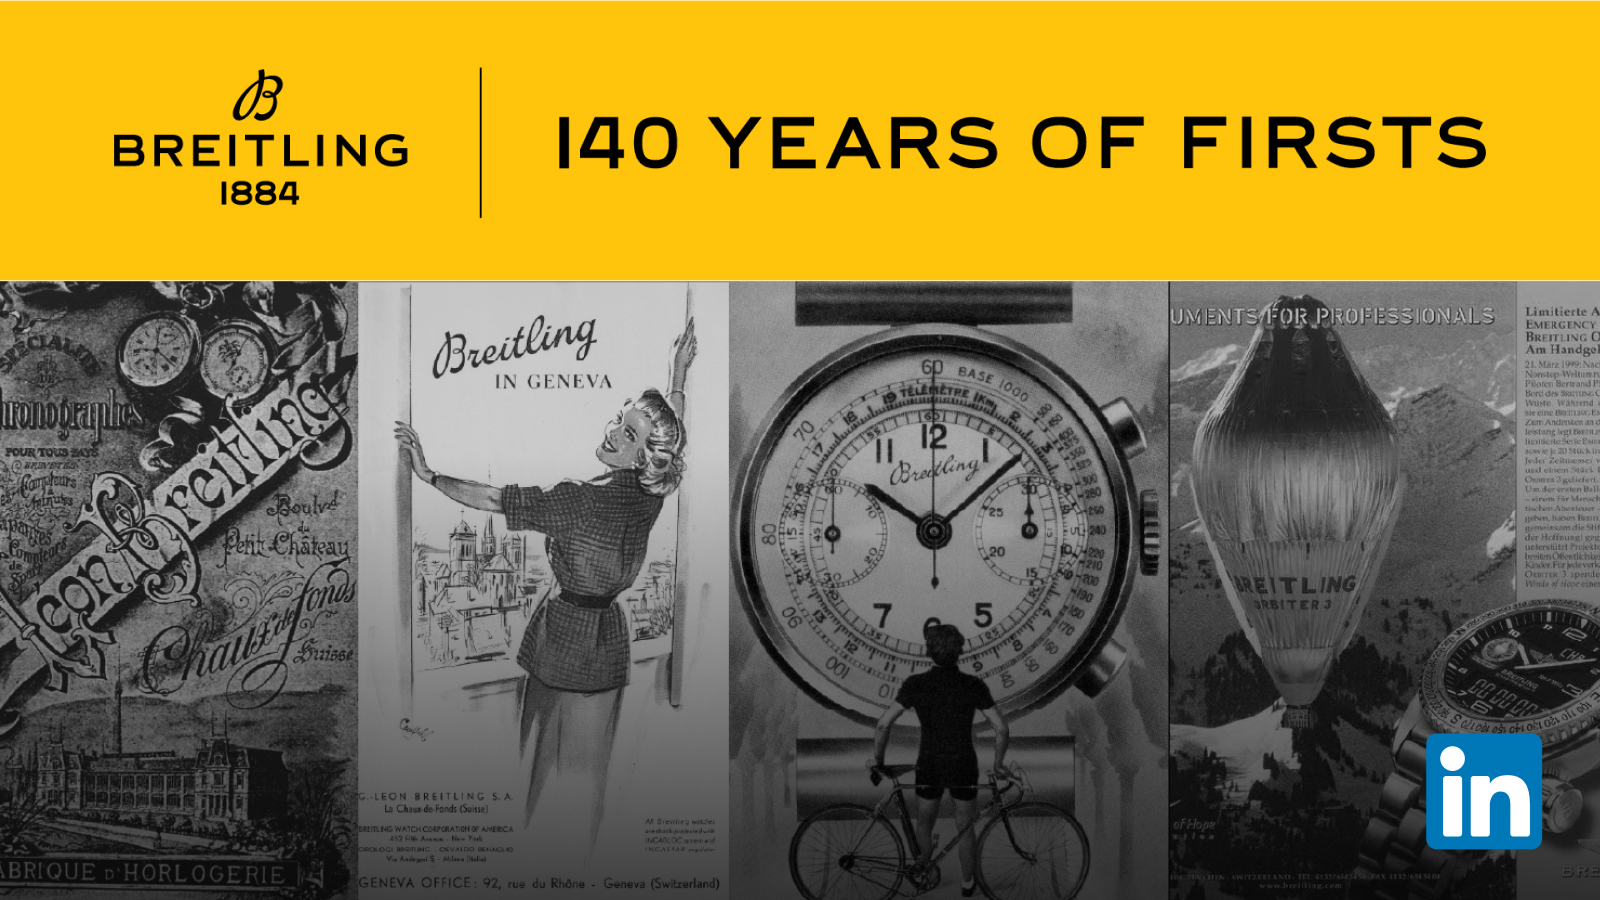 Acompanhe a jornada da Breitling no LinkedIn e subscreva a nossa newsletter “Since 1884” para obter todos os conteúdos relacionados com o nosso legado.